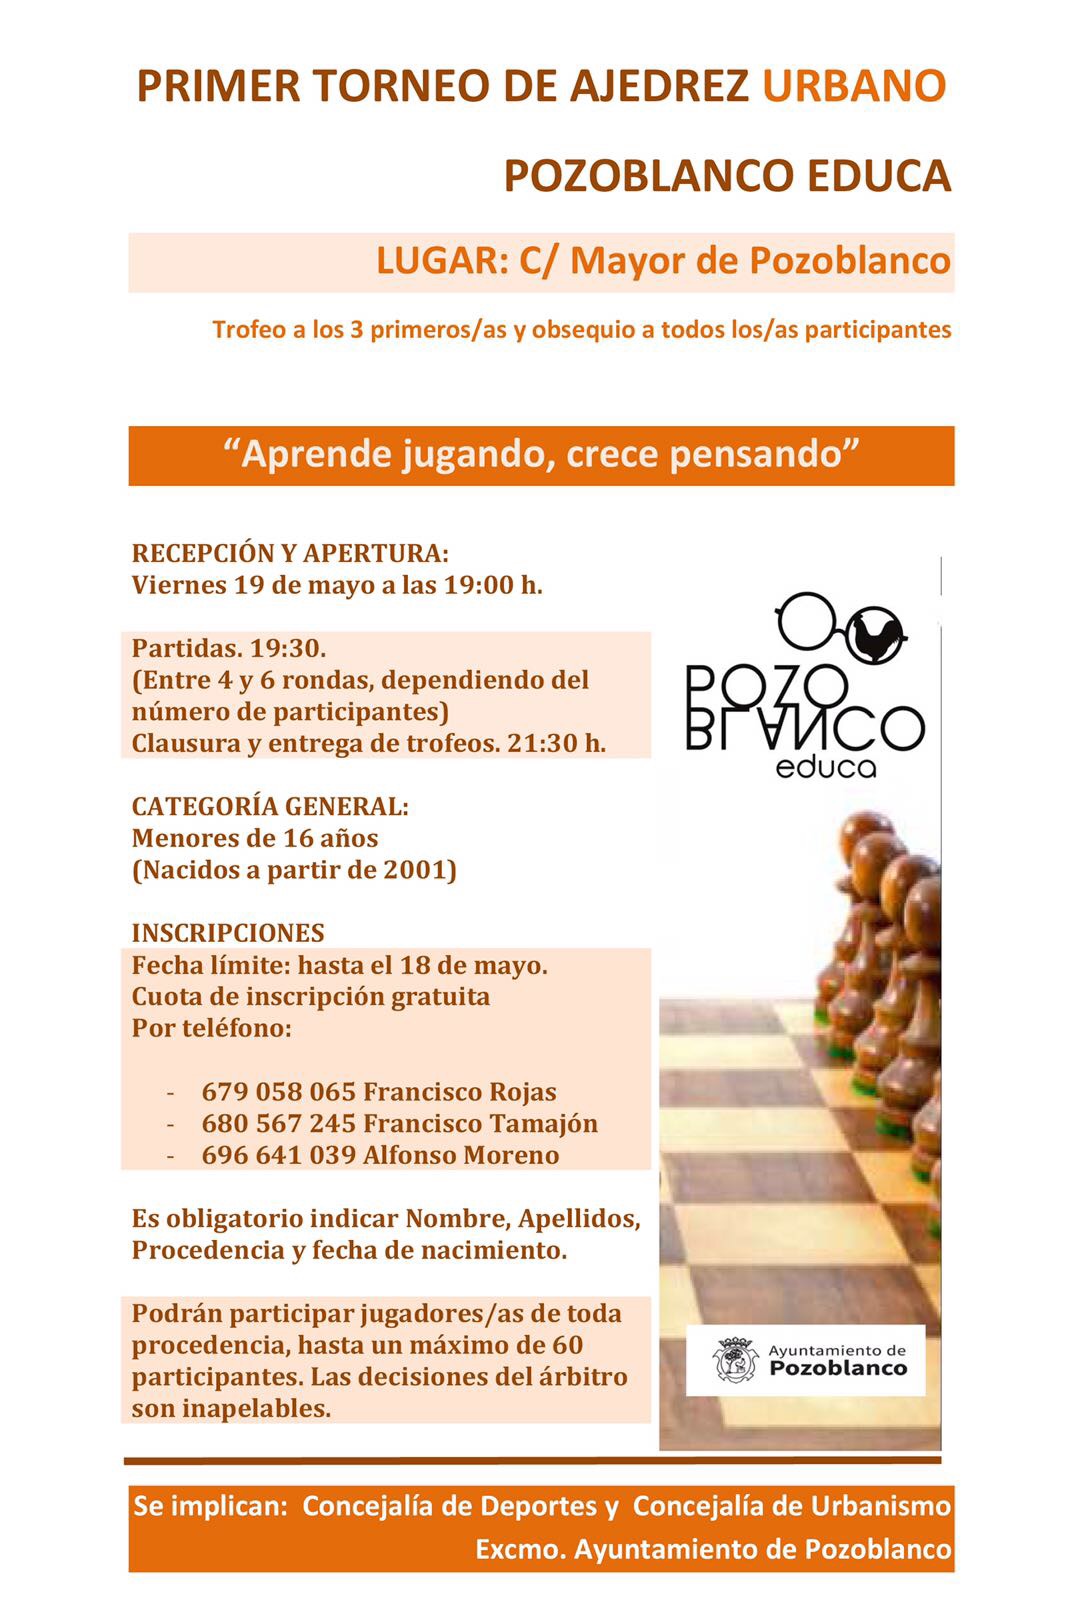 Pozoblanco Educa organiza el primer torneo de ajedrez infantil en la calle 1